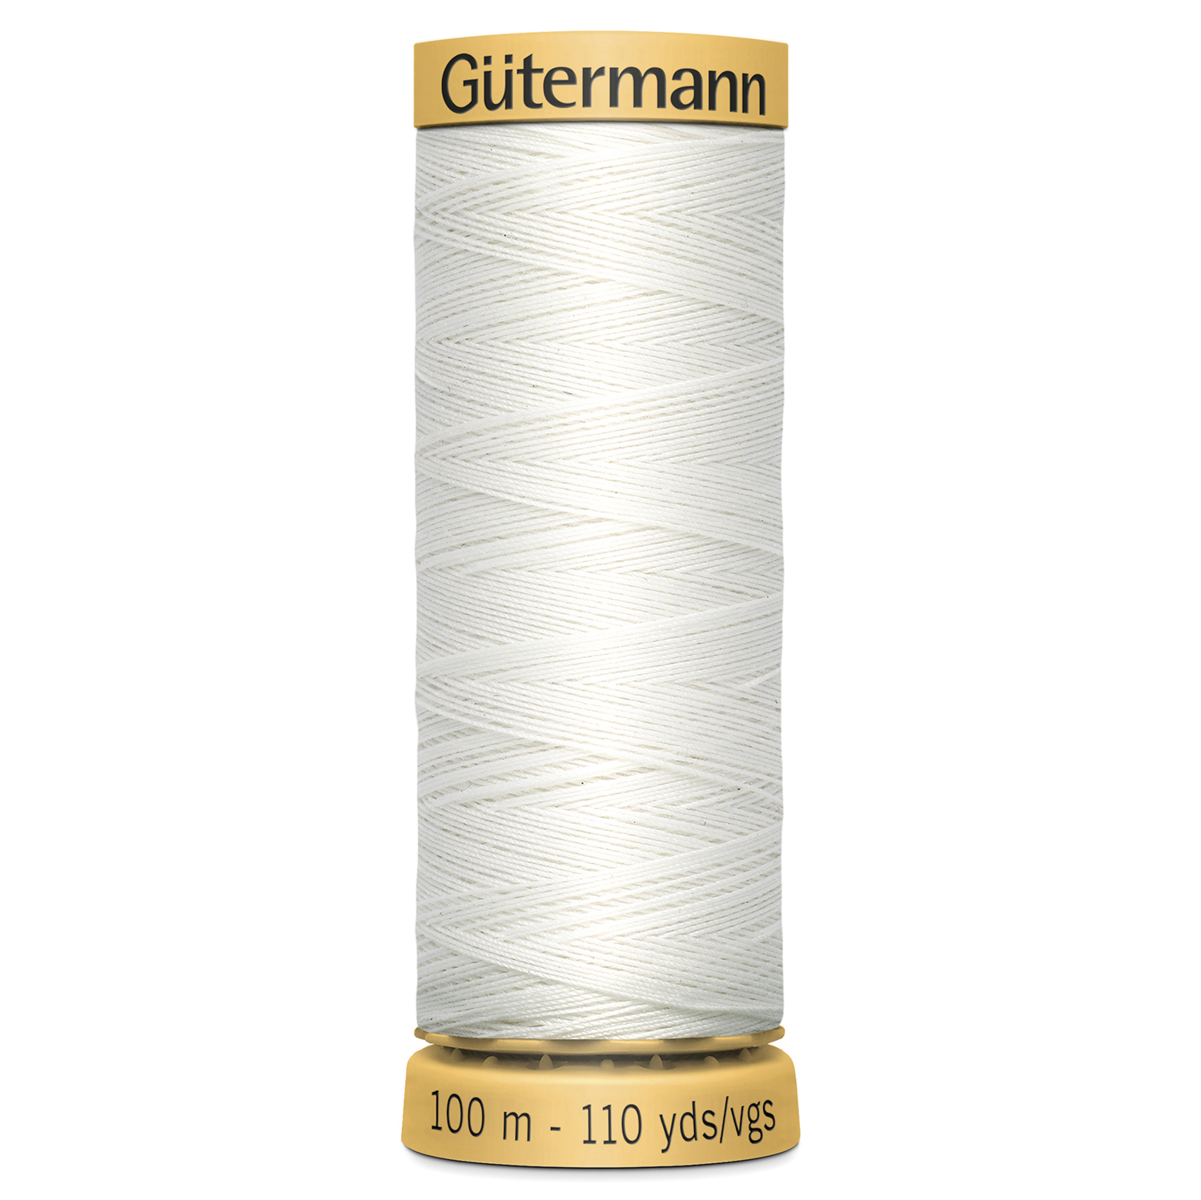 Gutermann Natural Cotton